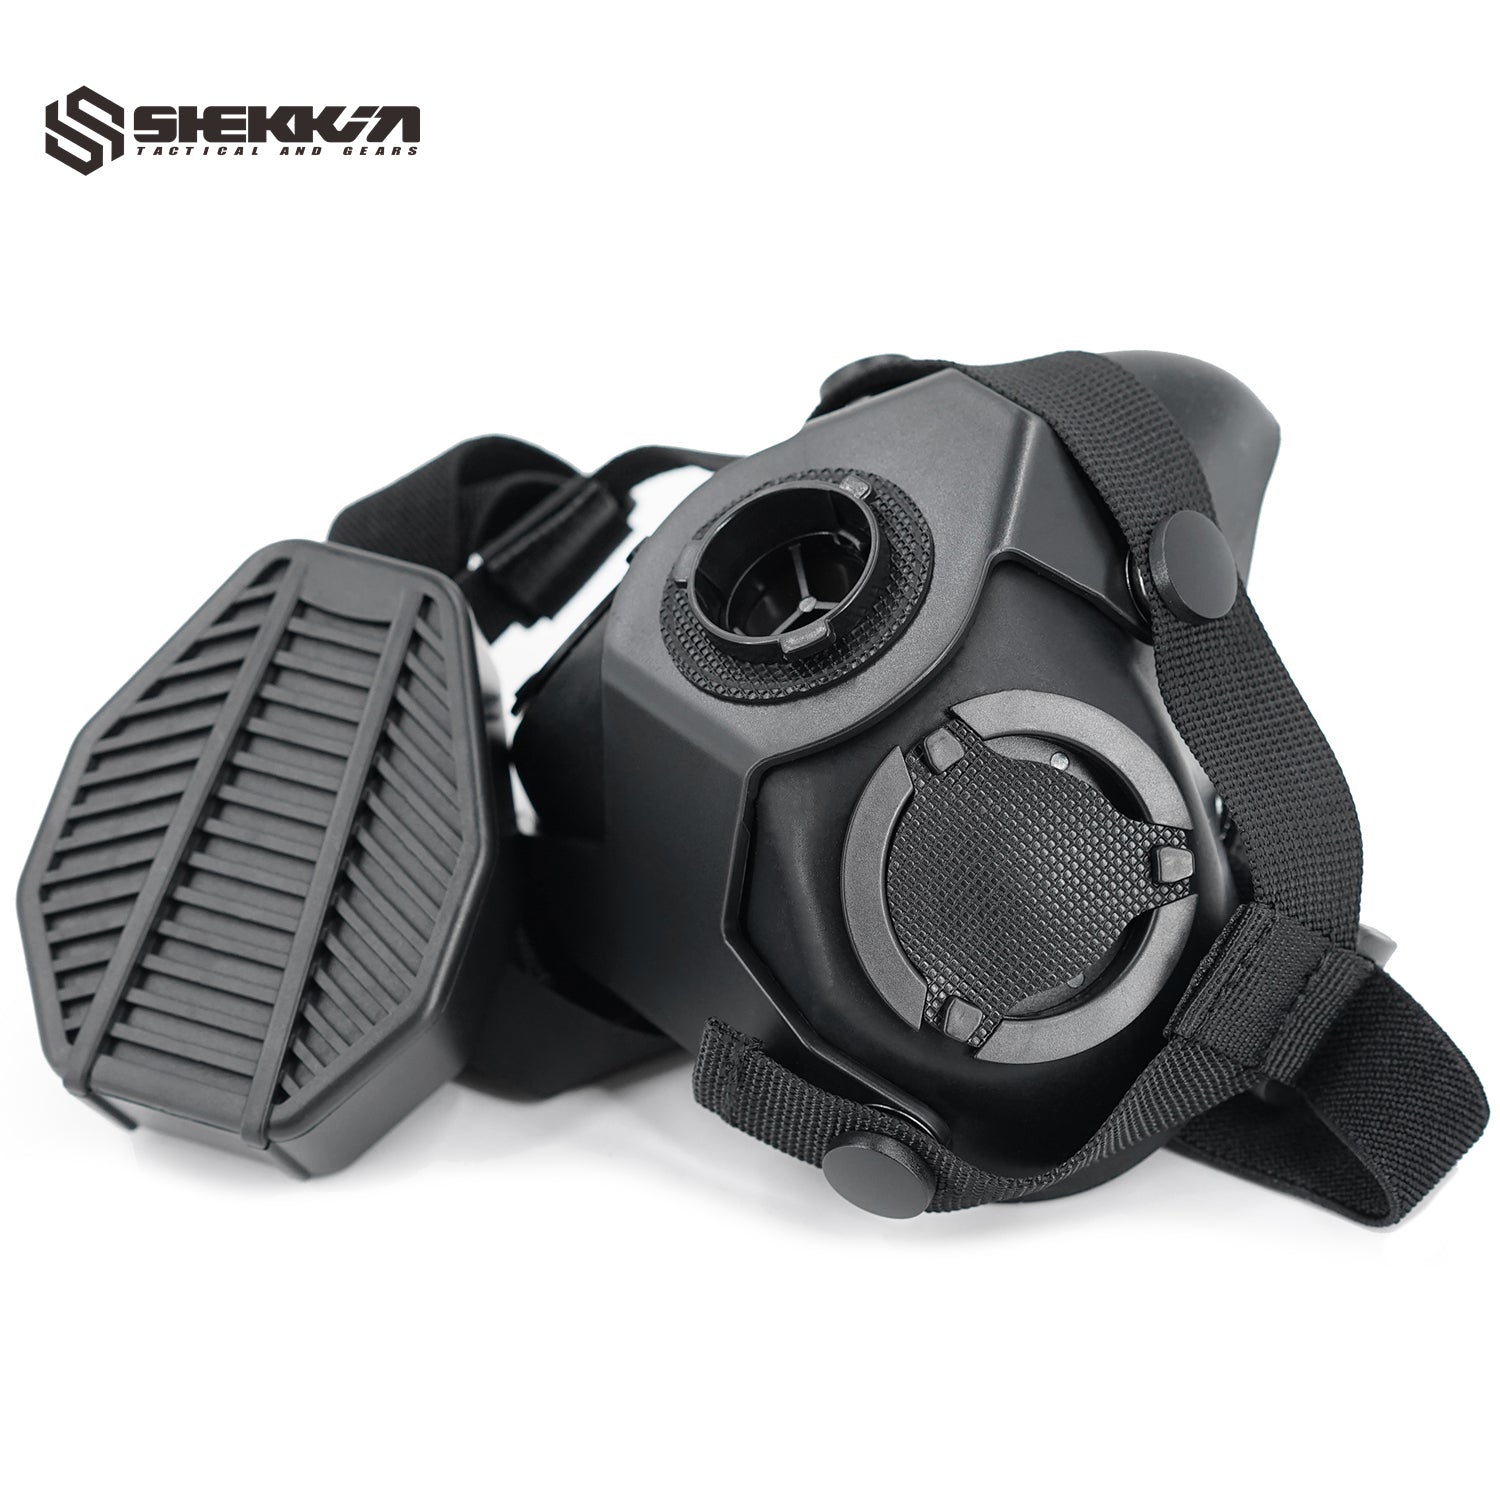 Ops-Core style SOTR mask - Shekkin Gears